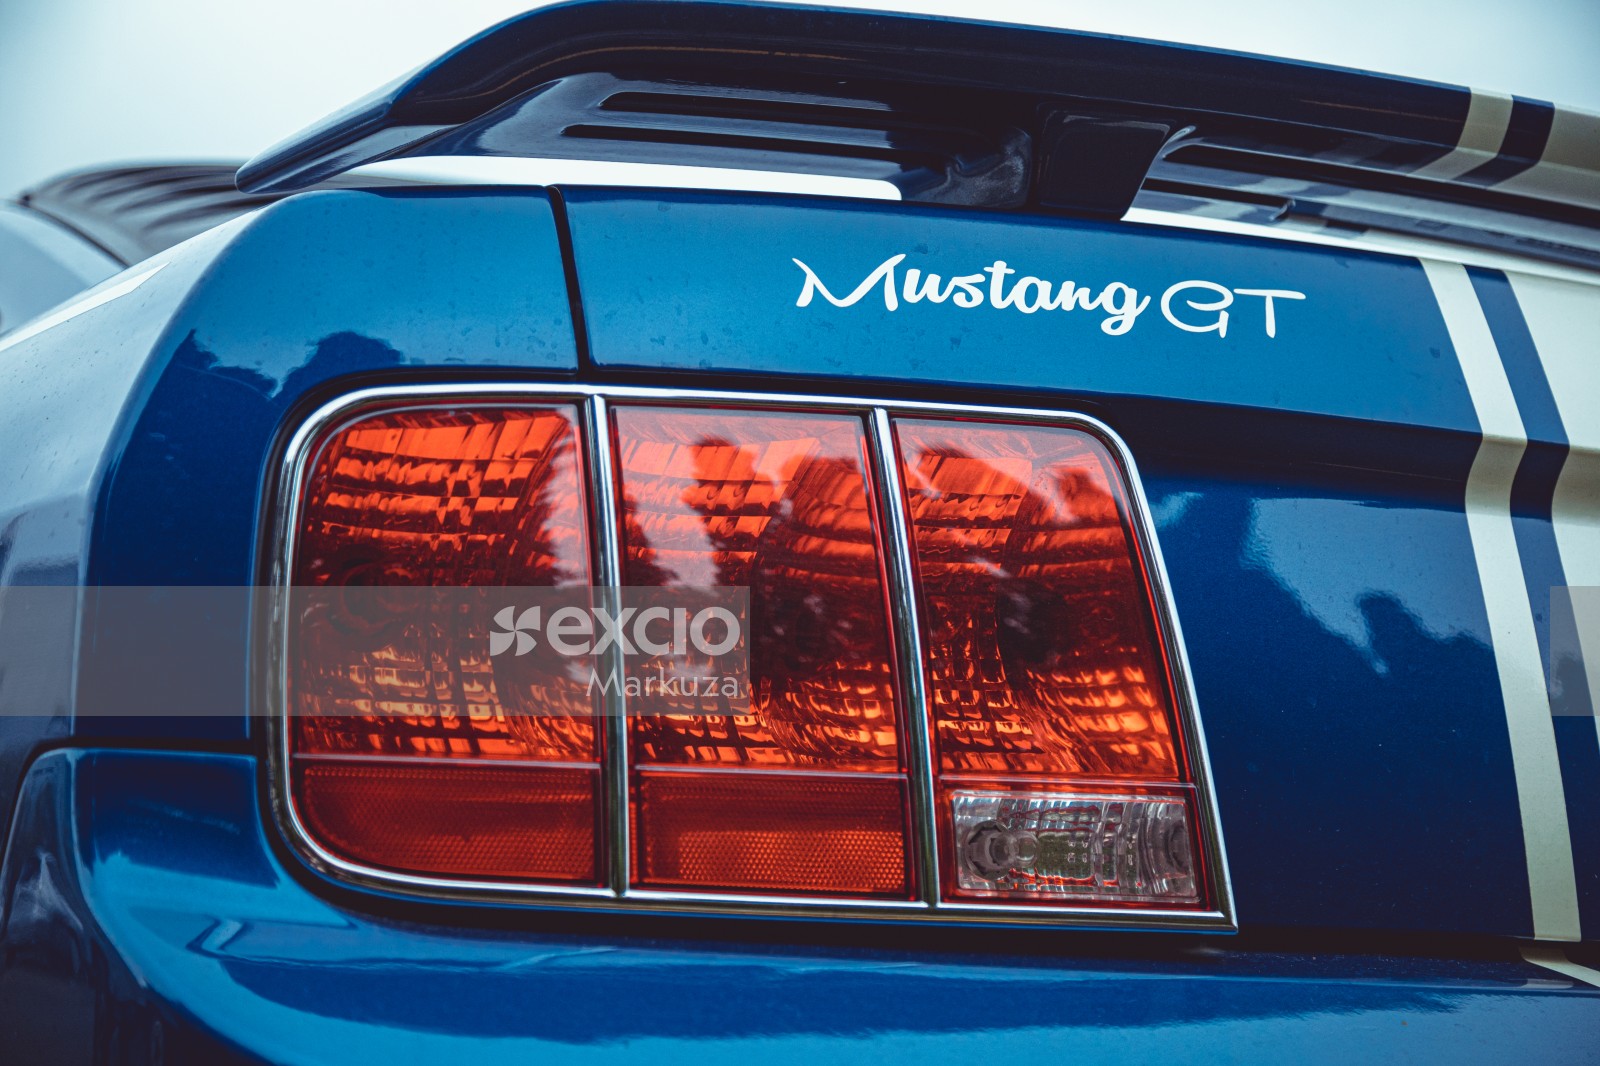 Blue Ford Mustang GT rear light